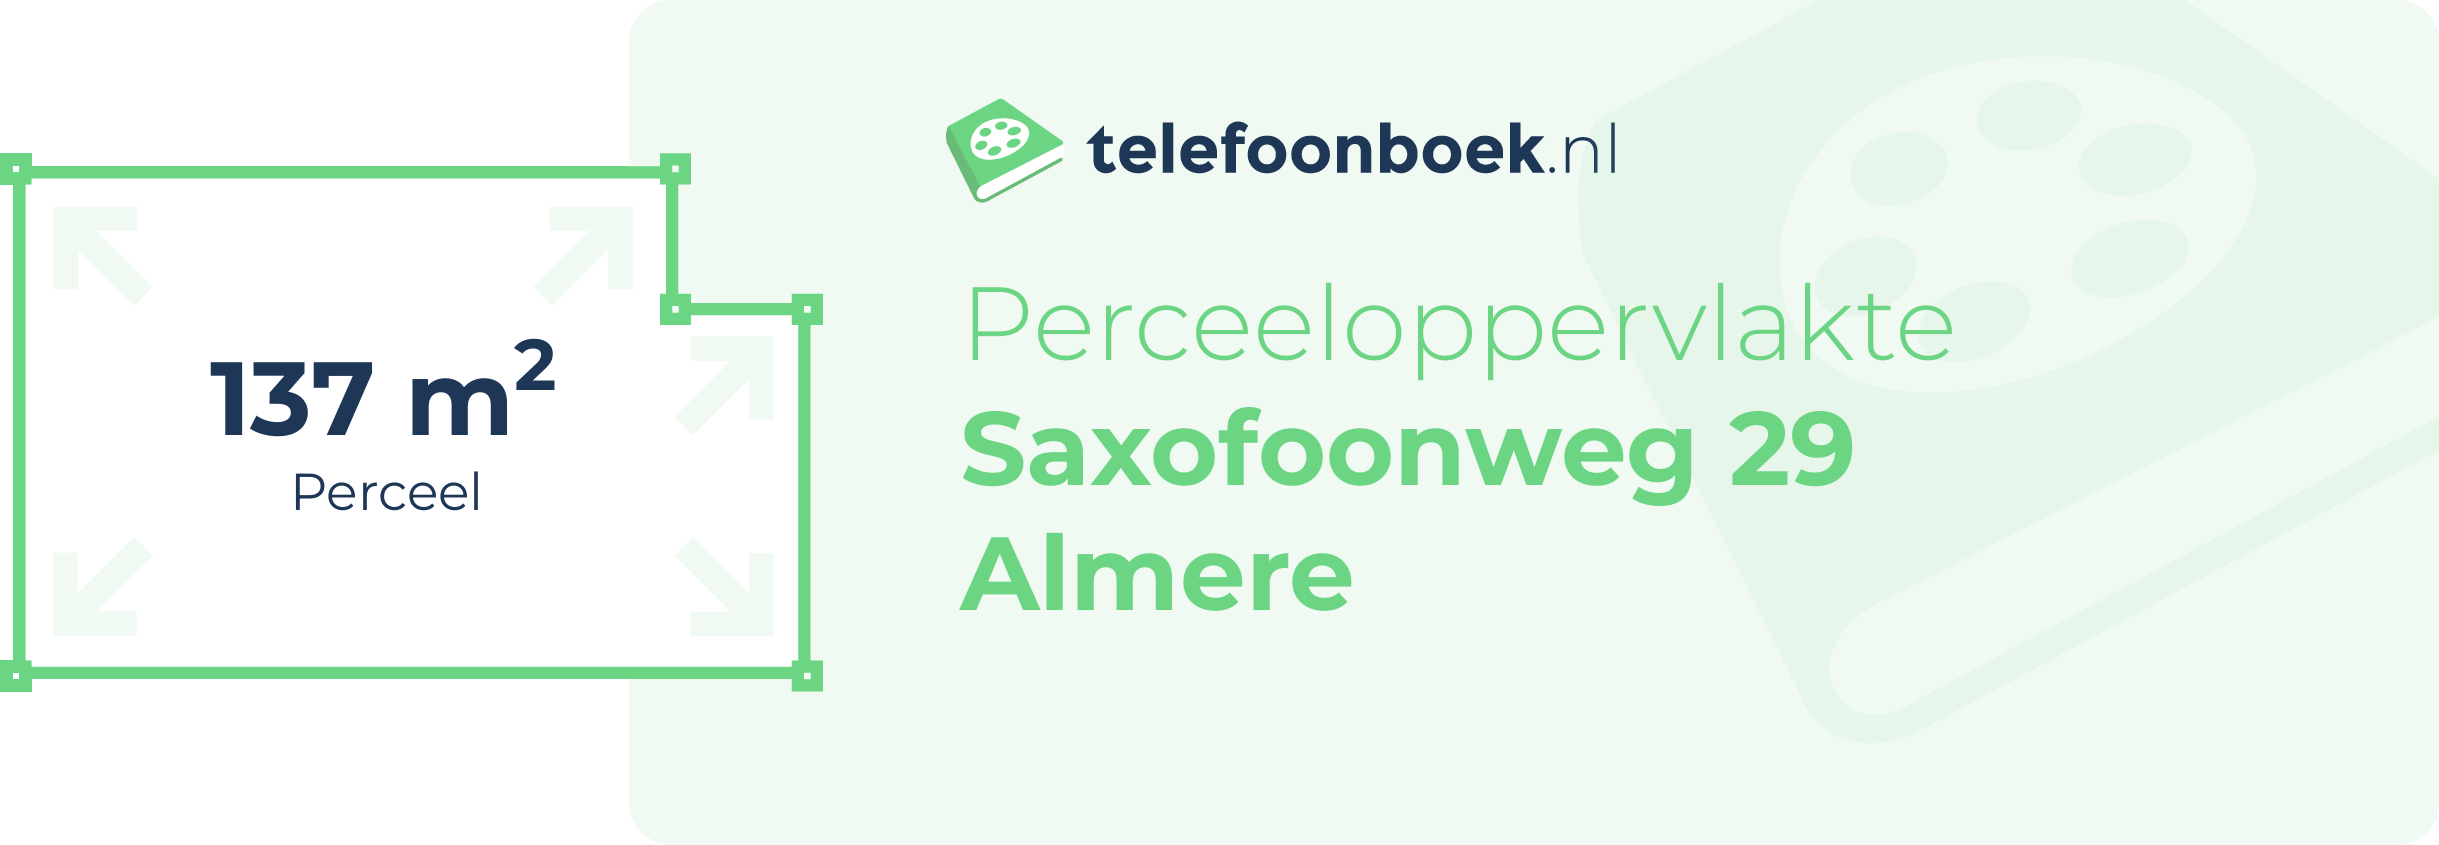 Perceeloppervlakte Saxofoonweg 29 Almere